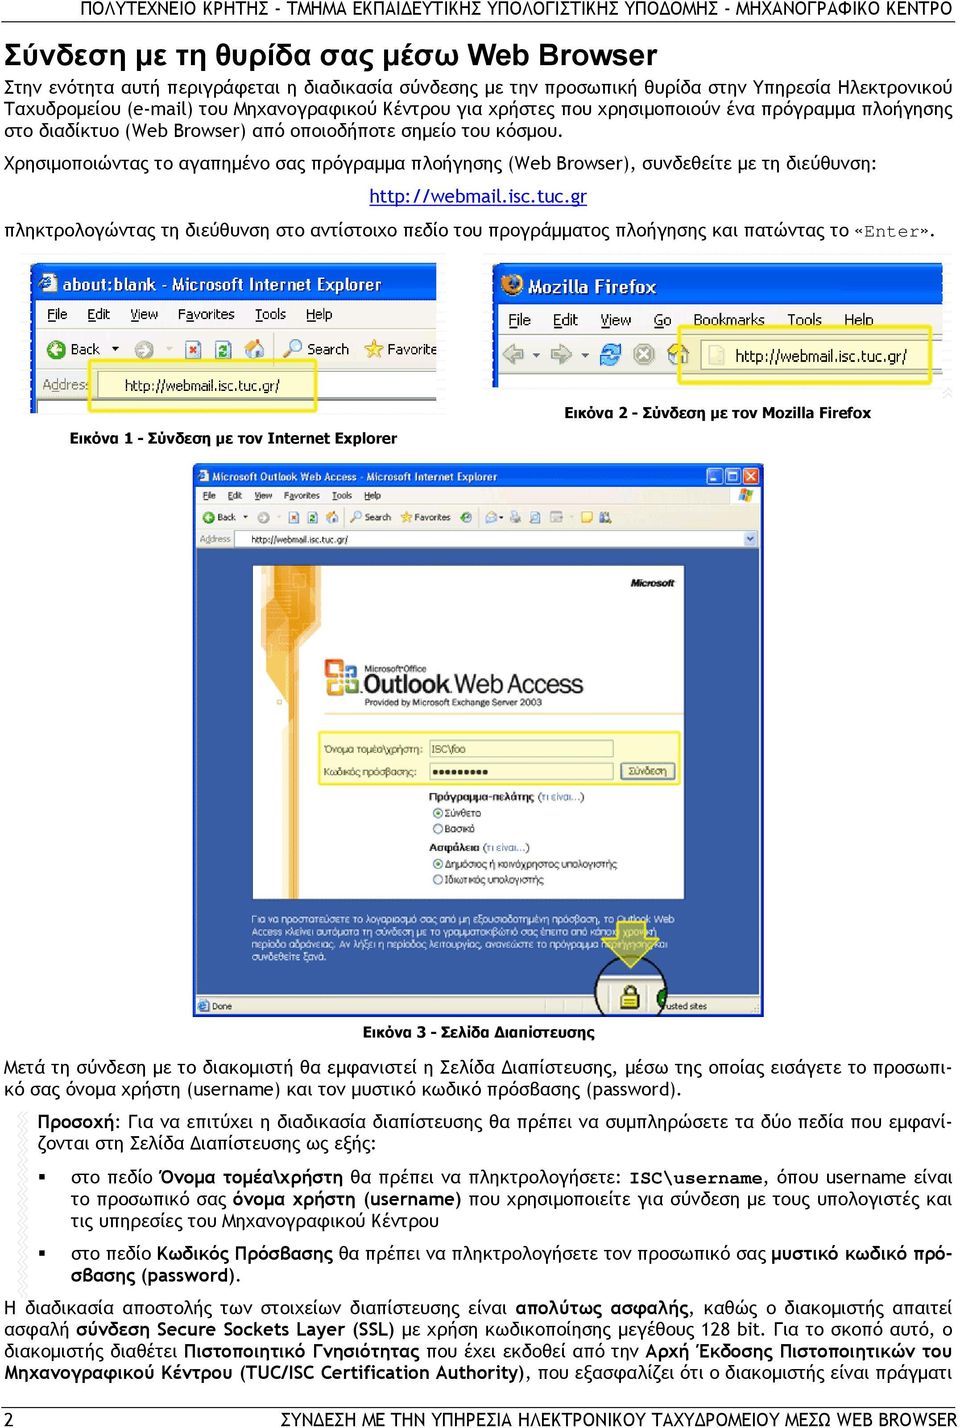 Χρησιμοποιώντας το αγαπημένο σας πρόγραμμα πλοήγησης (Web Browser), συνδεθείτε με τη διεύθυνση: http://webmail.isc.tuc.